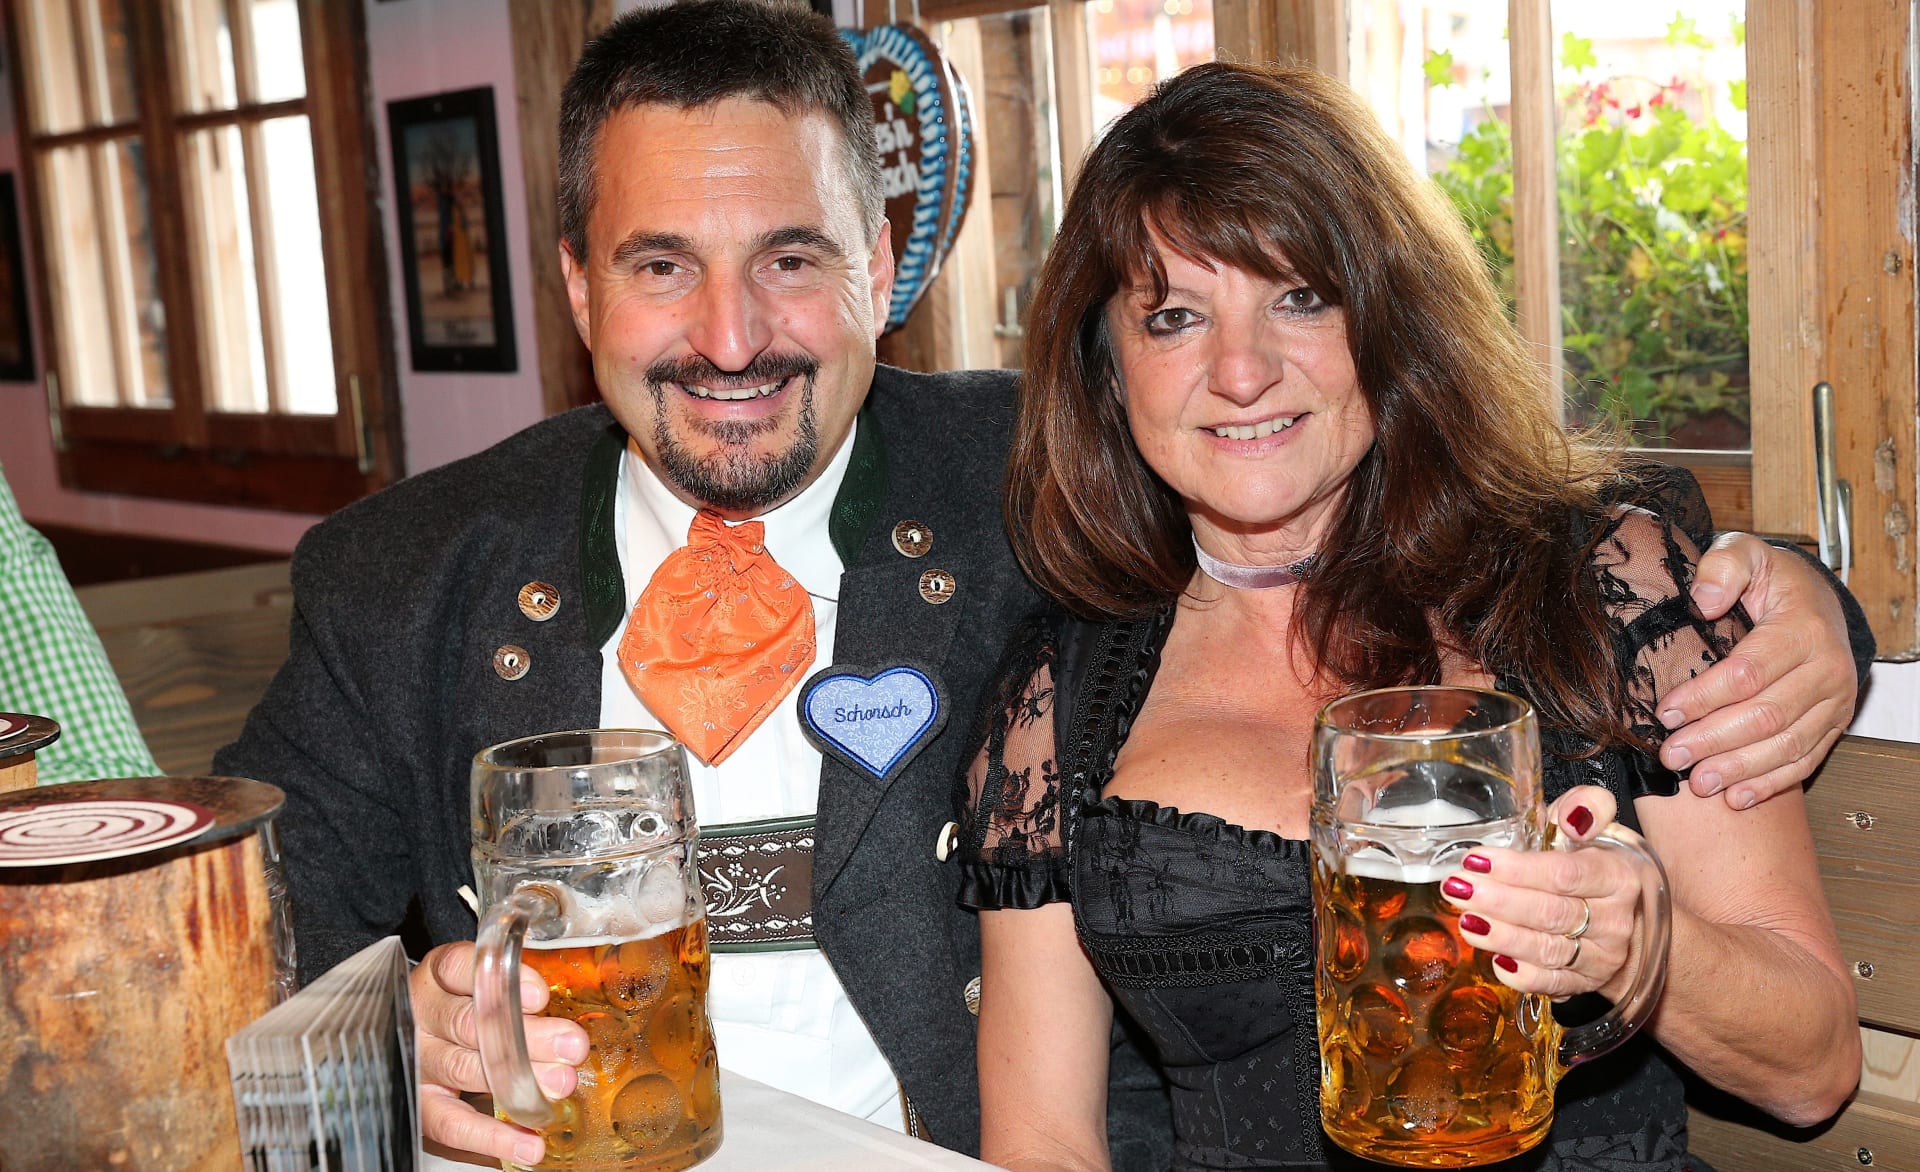 Georg Hackl, pocházejícího z bavorského Berchtesgadenu, se díky svému původu tradičně účastnil mnichovského pivního svátku Oktoberfest, na který v roce 2017 dorazil se svou přítelkyní Kornelií Kollerovou.